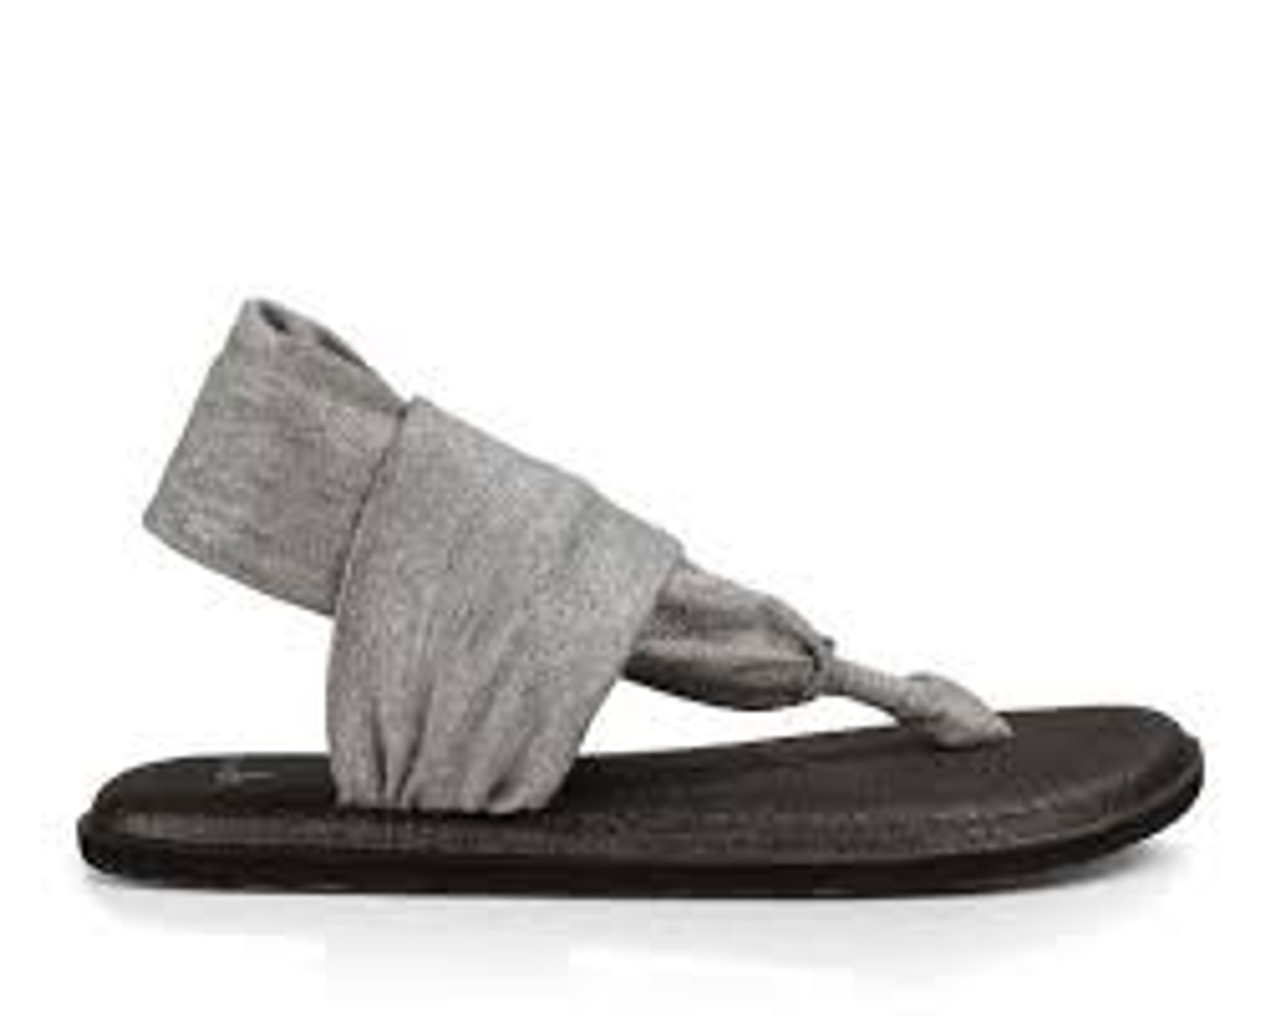 Sanuk Yoga Sling 2 Women's Sandals